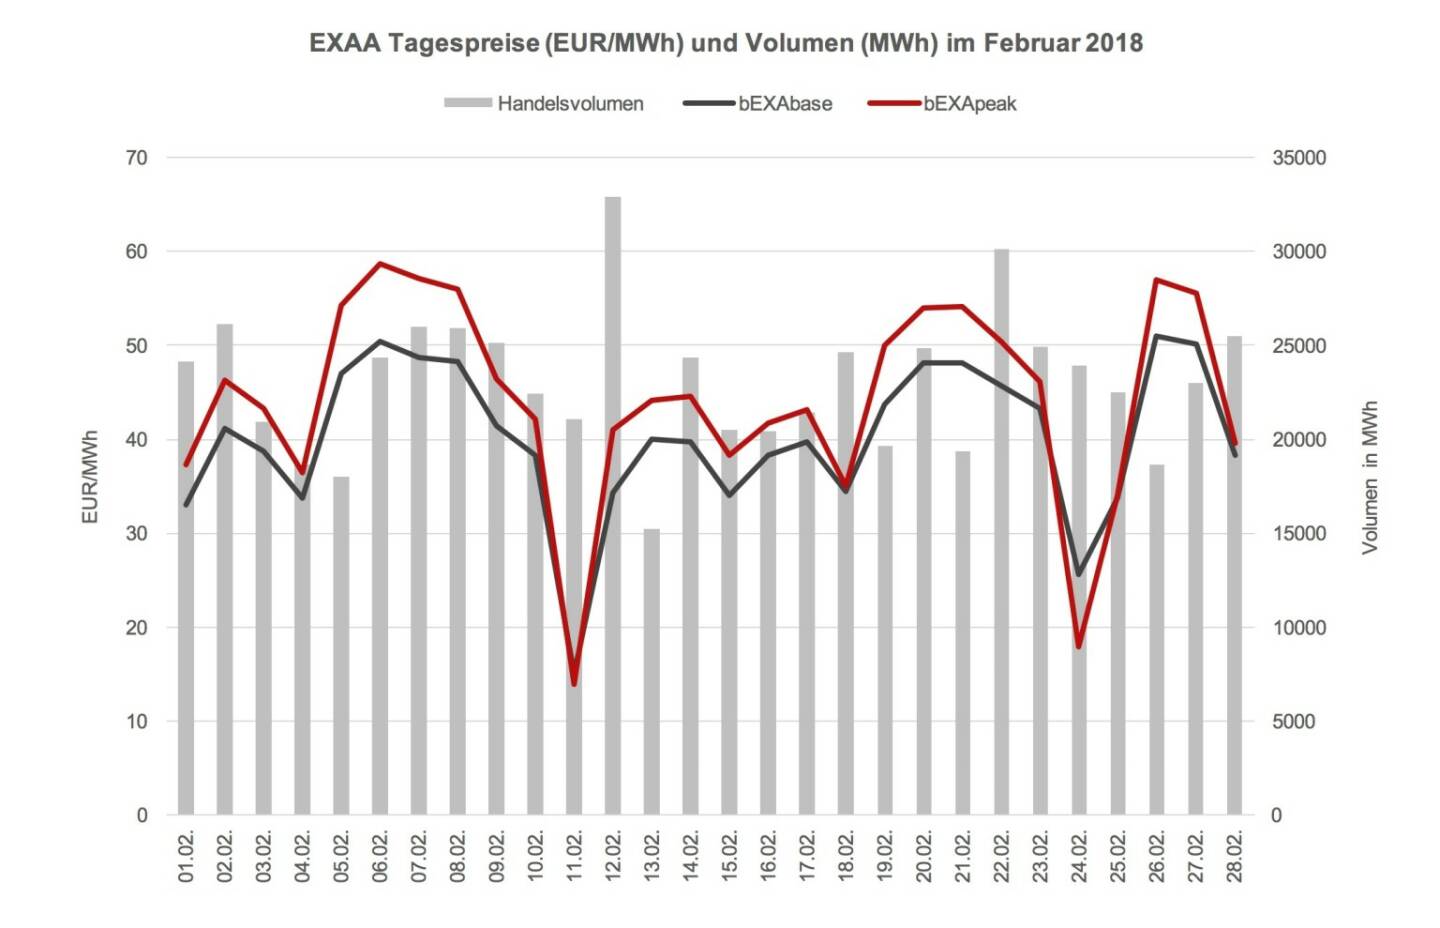 Das Preisniveau ist im Februar 2018 im Monatsmittel mit 40,15 EUR/MWh im bEXAbase (00-24 Uhr) und 44,23 EUR/MWh im bEXApeak (09-20 Uhr) im Vergleich zum Jänner 2018 (29,78 bEXAbase bzw. 37,39 bEXApeak) erheblich gestiegen. Durch die nachträgliche Kaltfront im Februar sind die Preise nun wieder auf Vorjahresniveau.